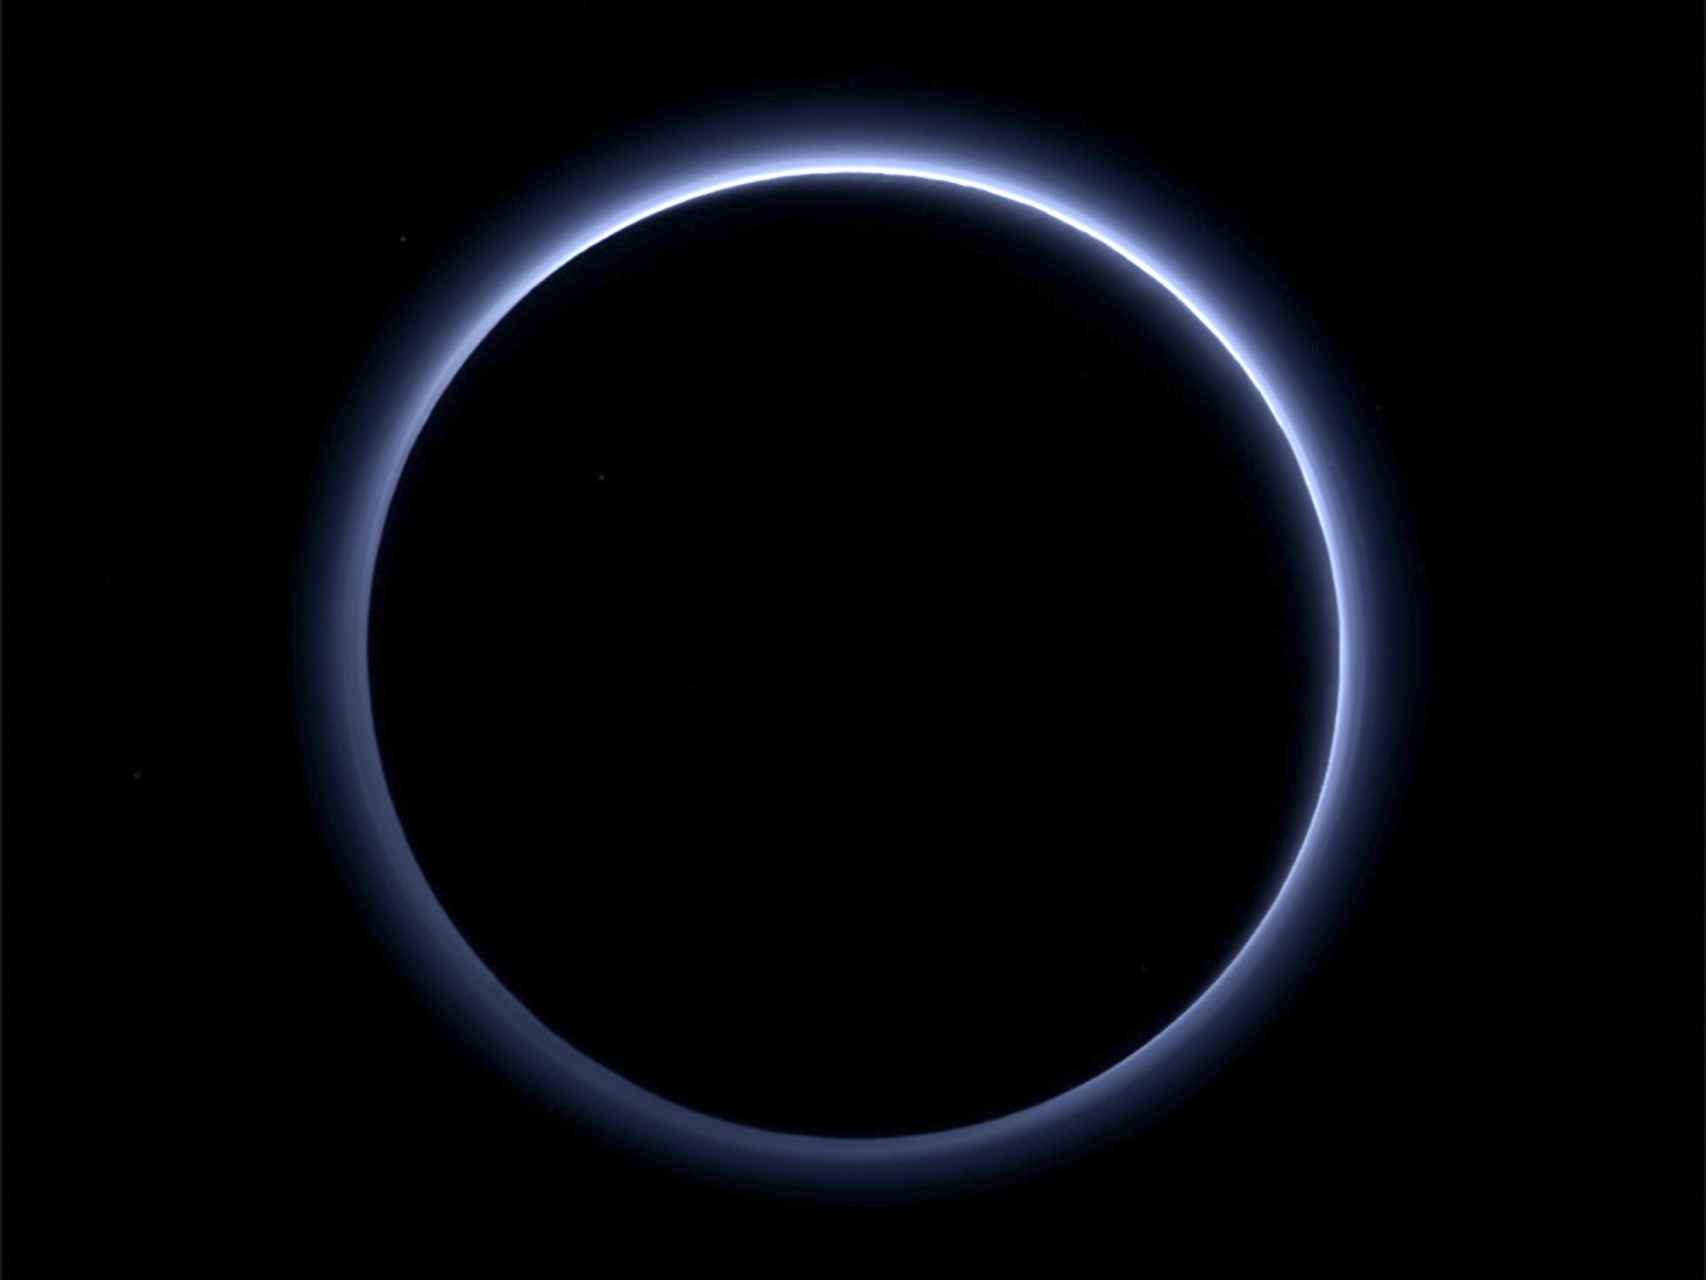 Una de las imágenes de Plutón captadas por la New Horizons